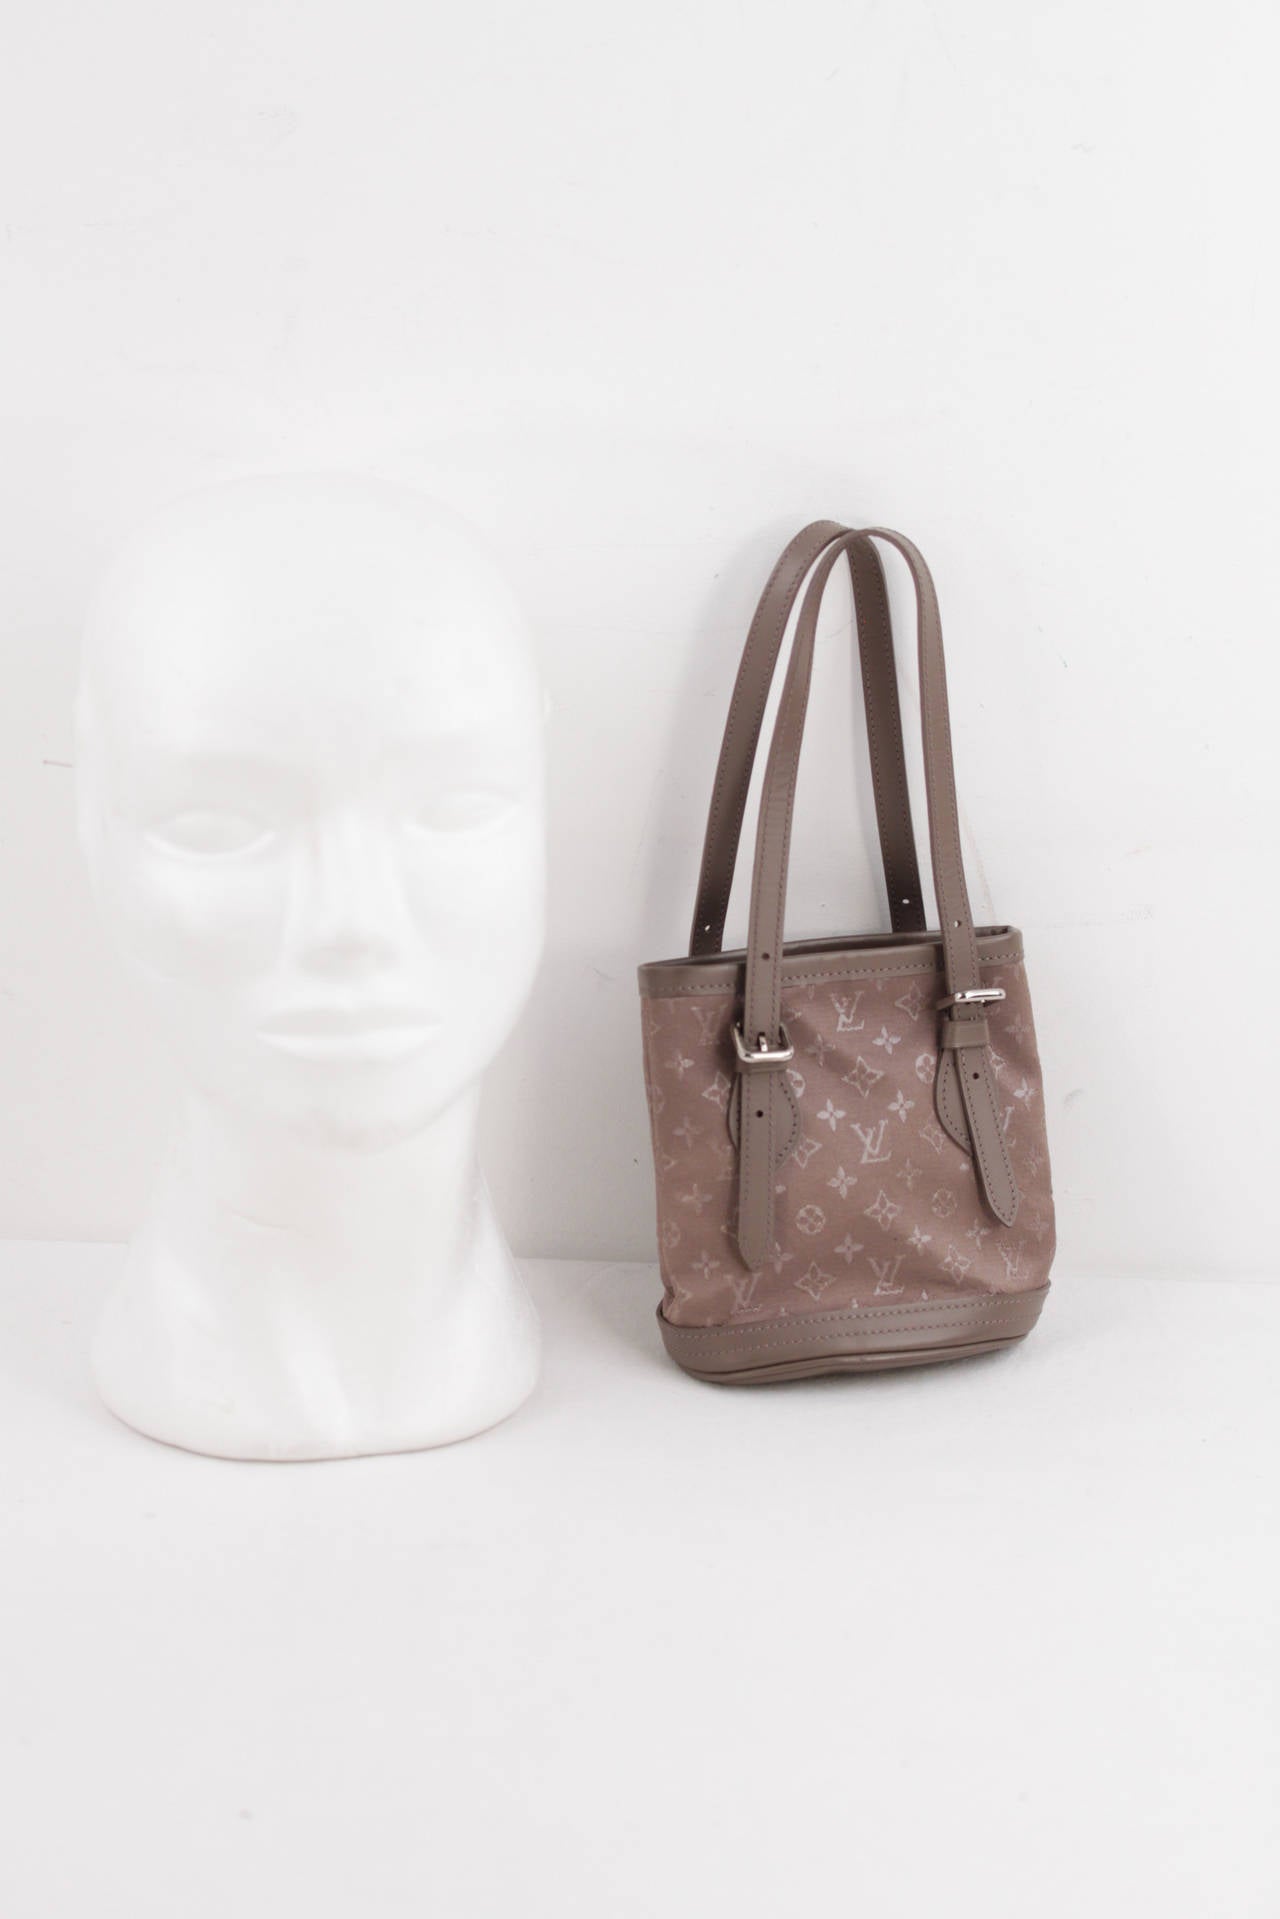 LOUIS VUITTON Taupe MONOGRAM SATIN Micro MINI BUCKET BAG Little Handbag PURSE SA For Sale at 1stdibs